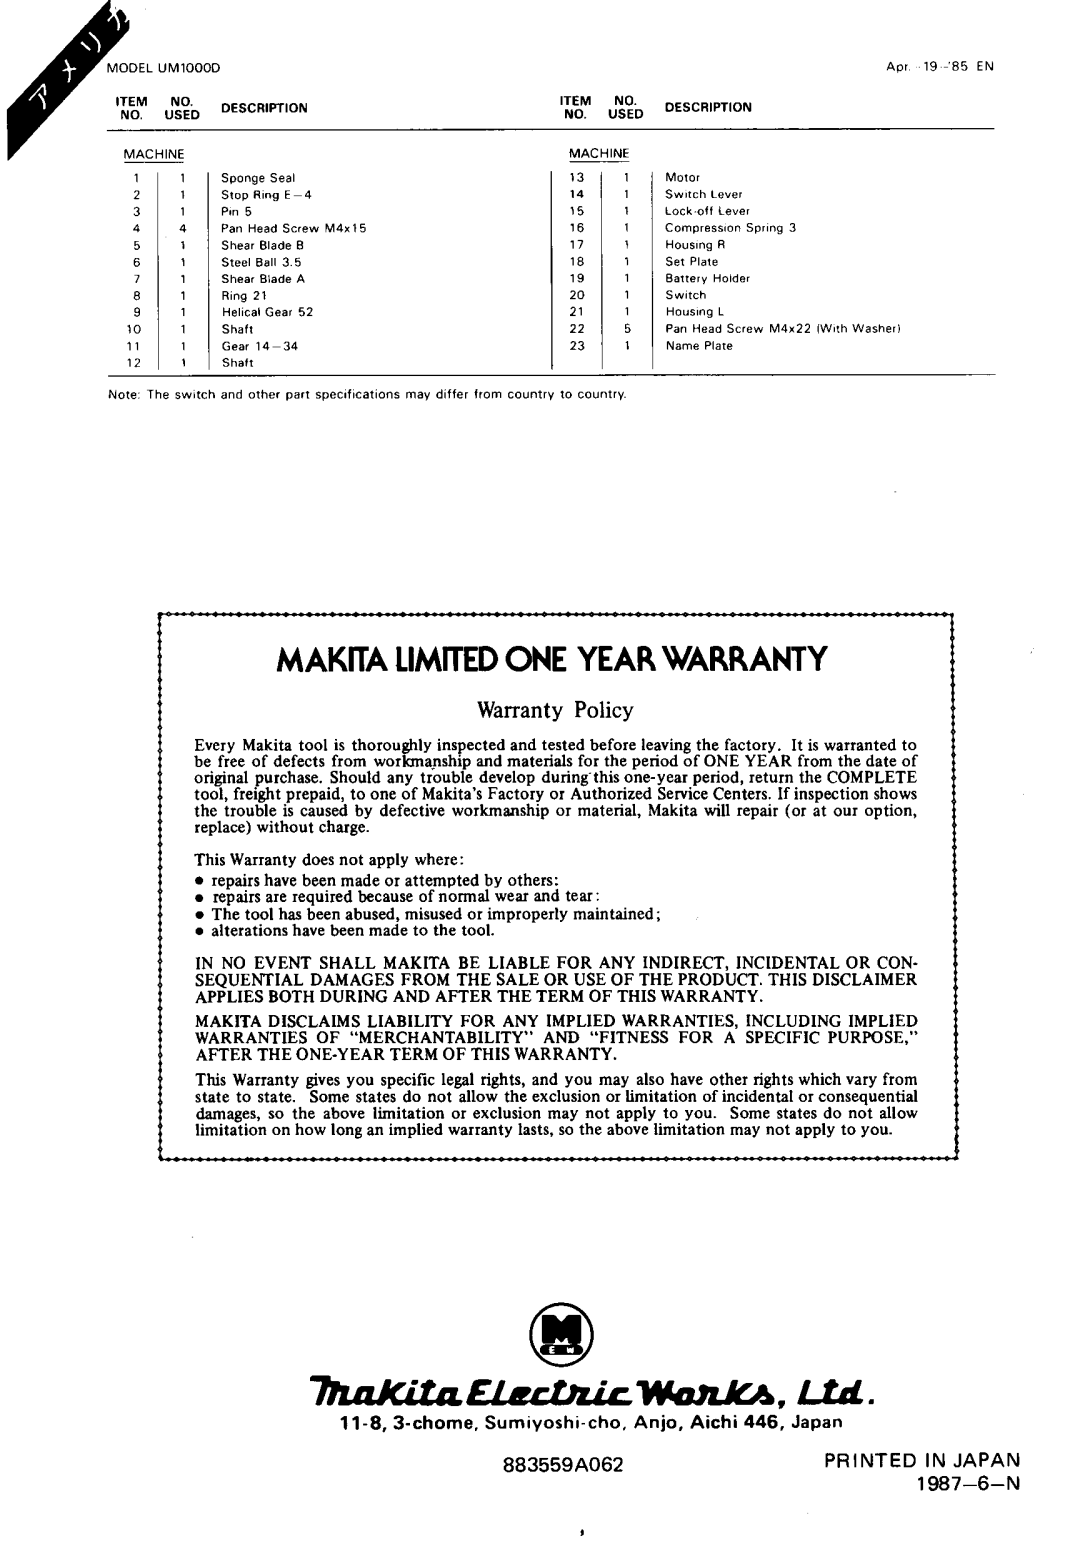 Makita UMLOOODW manual MAKIIA LlMmEDONE YEARWARRANTY, Warranty Policy, chome. Sumiyorhi-cho. Anjo, Aichi 446, Japan 